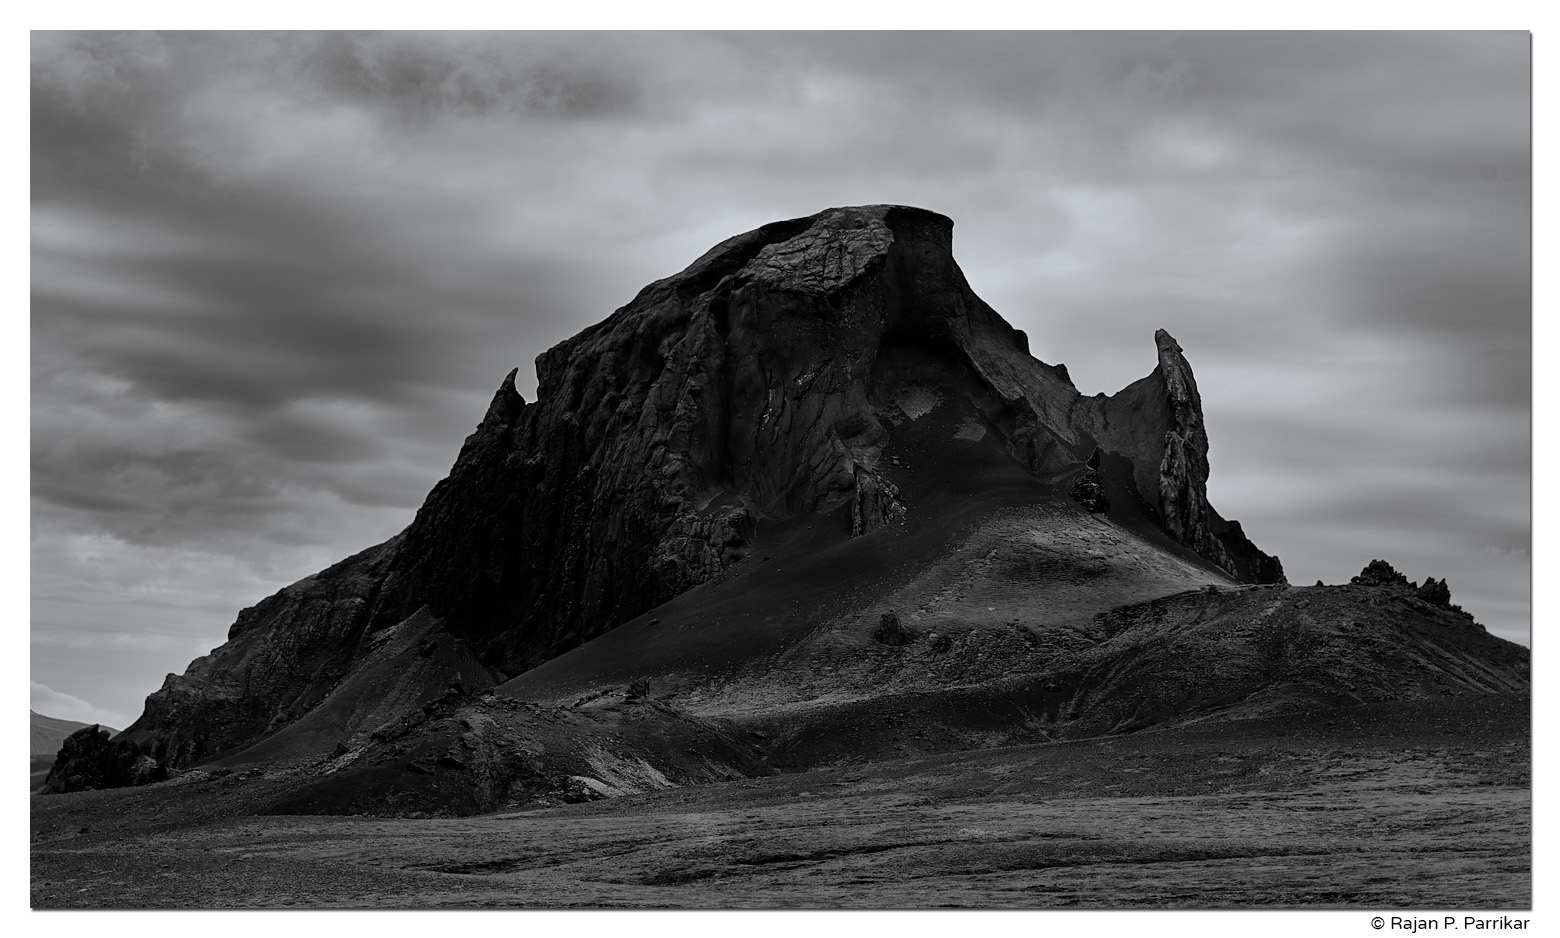 Einhyrningur on Syðra Fjallabak, Highlands, Iceland